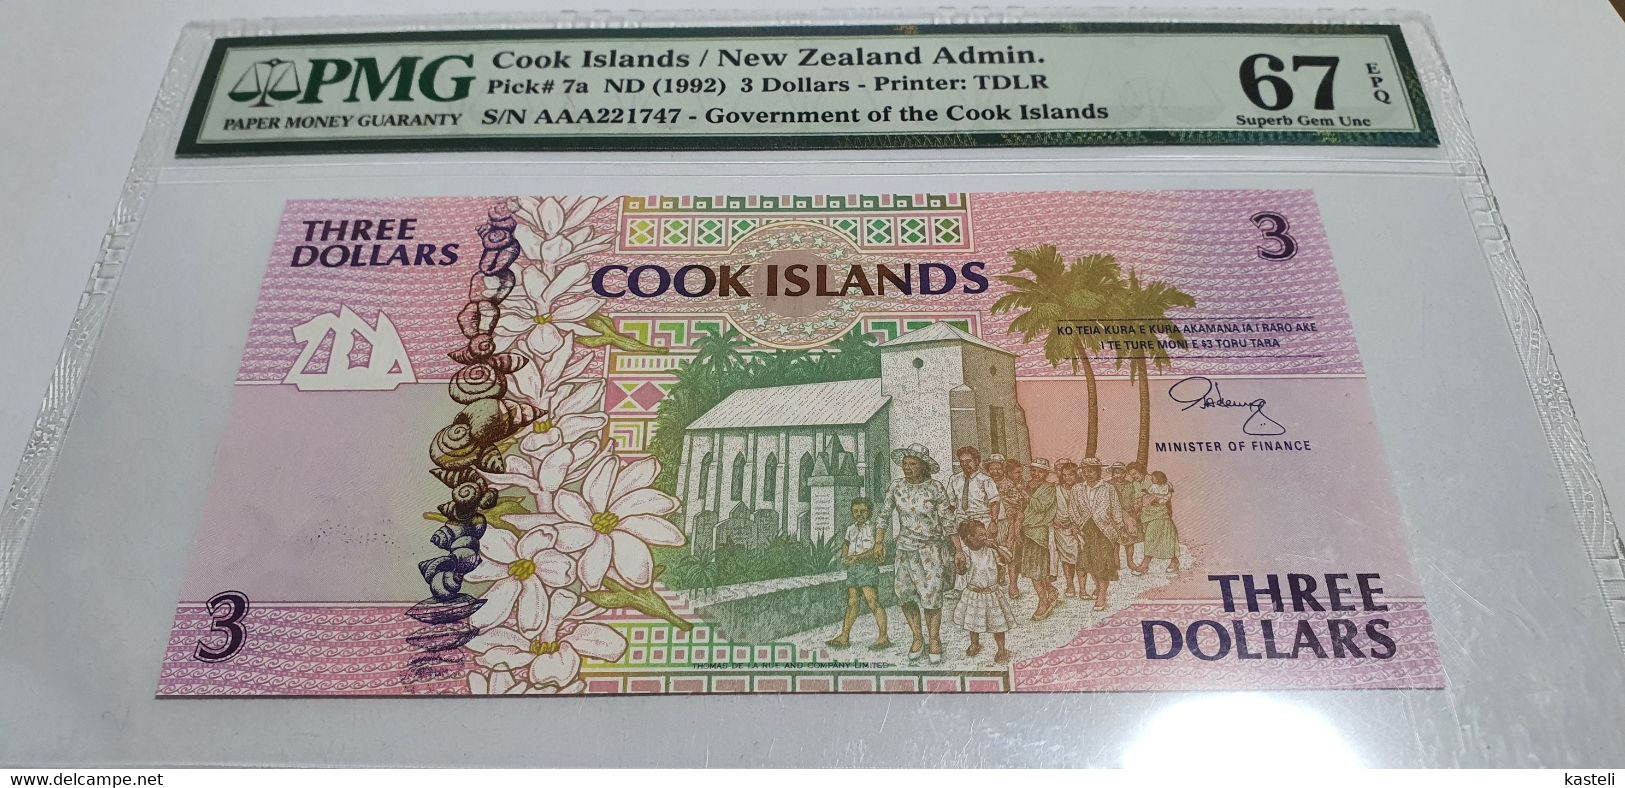 Jamaica,5$ - Canada 2$ - Nea Zealanda 3$ -  Bolivia .5 Centavos or 50 000 Pesos, Bolivia 1987  lot of 4  gradate bilete